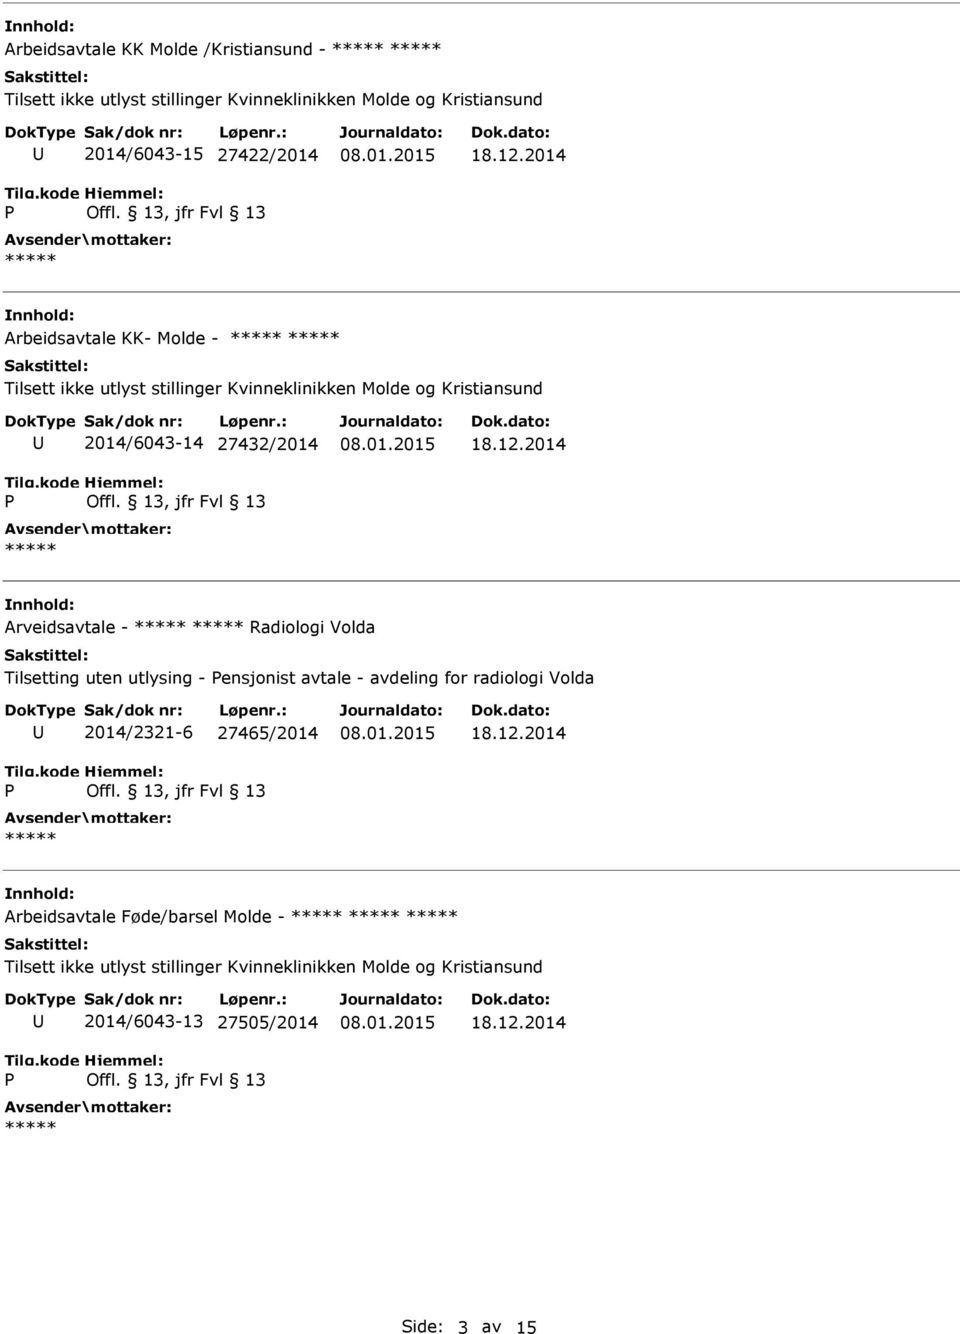 2014 Arveidsavtale - Radiologi Volda Tilsetting uten utlysing - ensjonist avtale - avdeling for radiologi Volda 2014/2321-6 27465/2014 18.12.